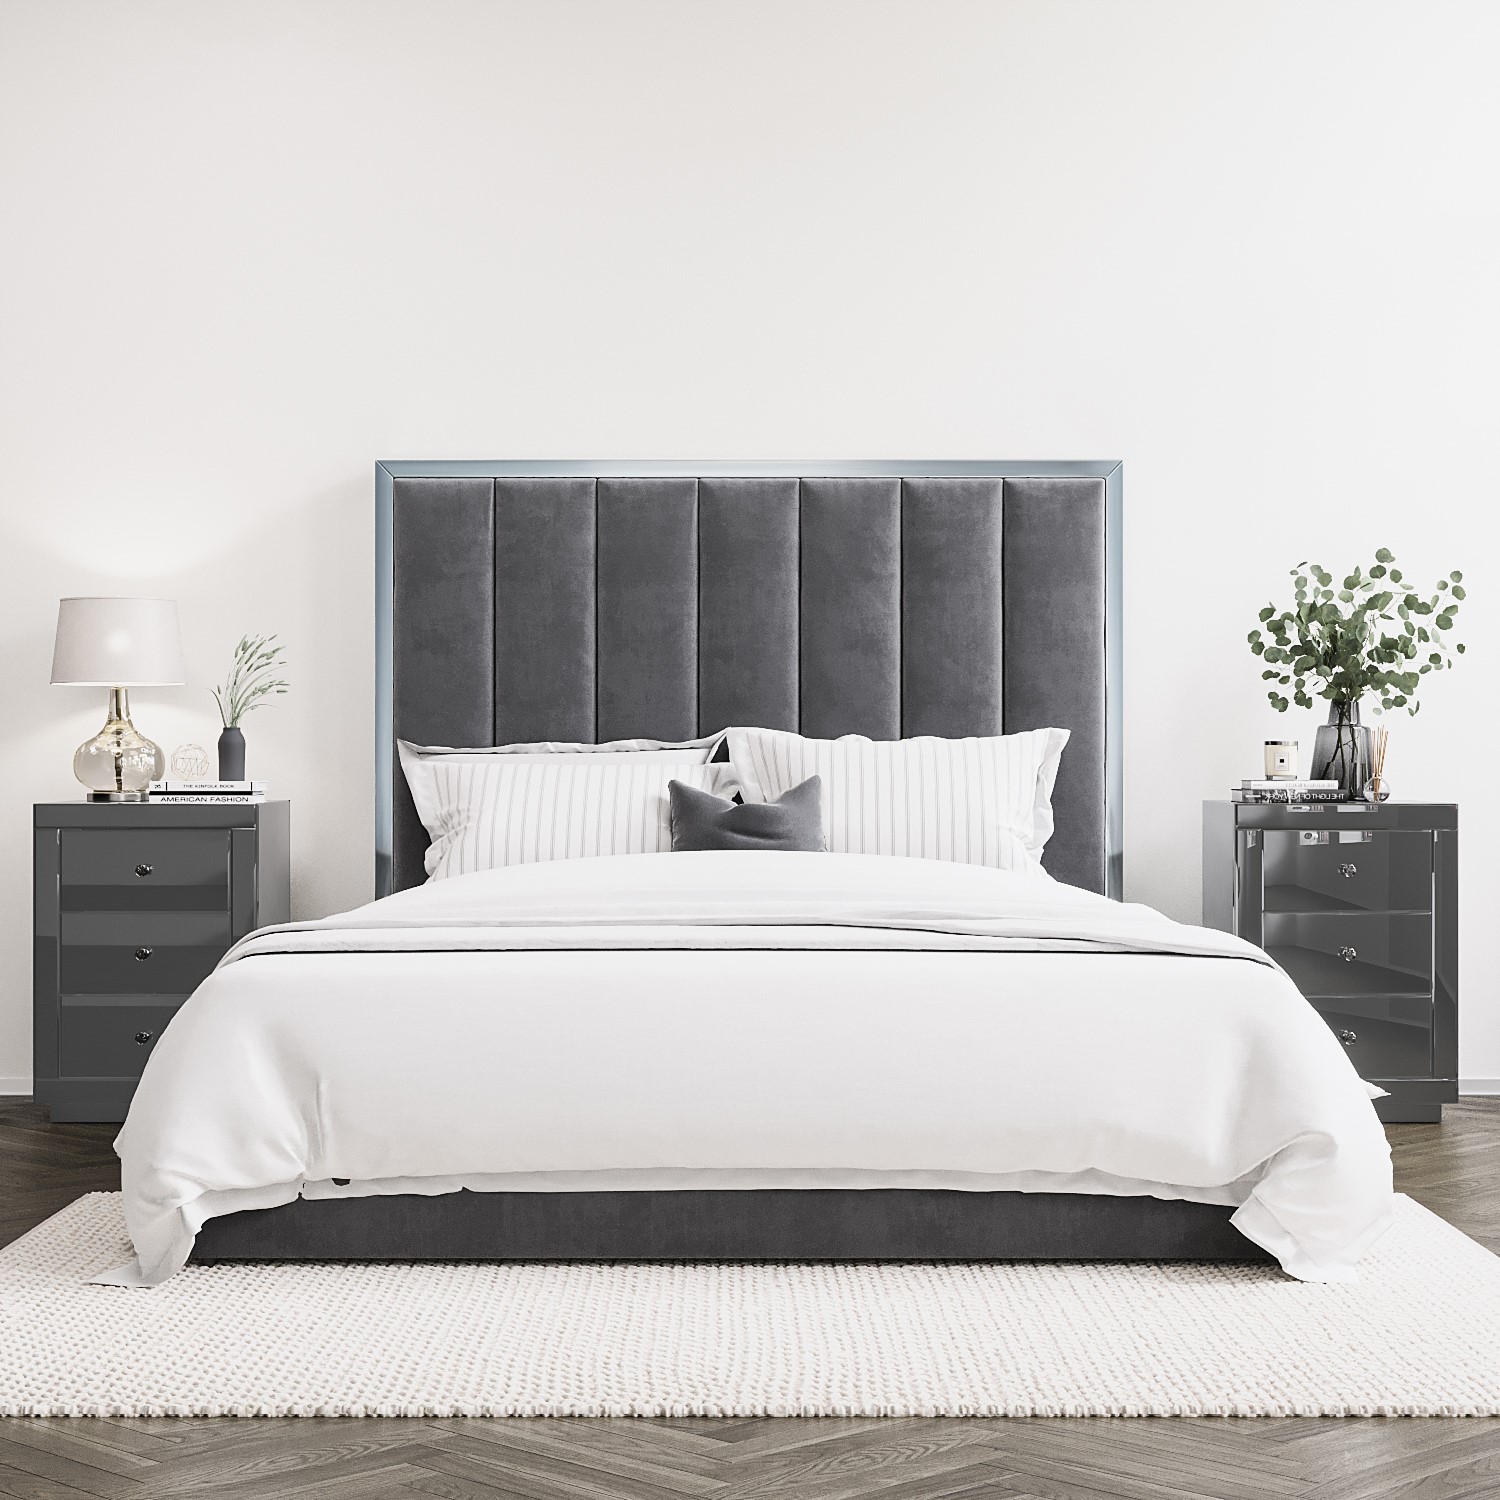 Grey Velvet King Size Ottoman Bed With, Grey Velvet Upholstered Headboard